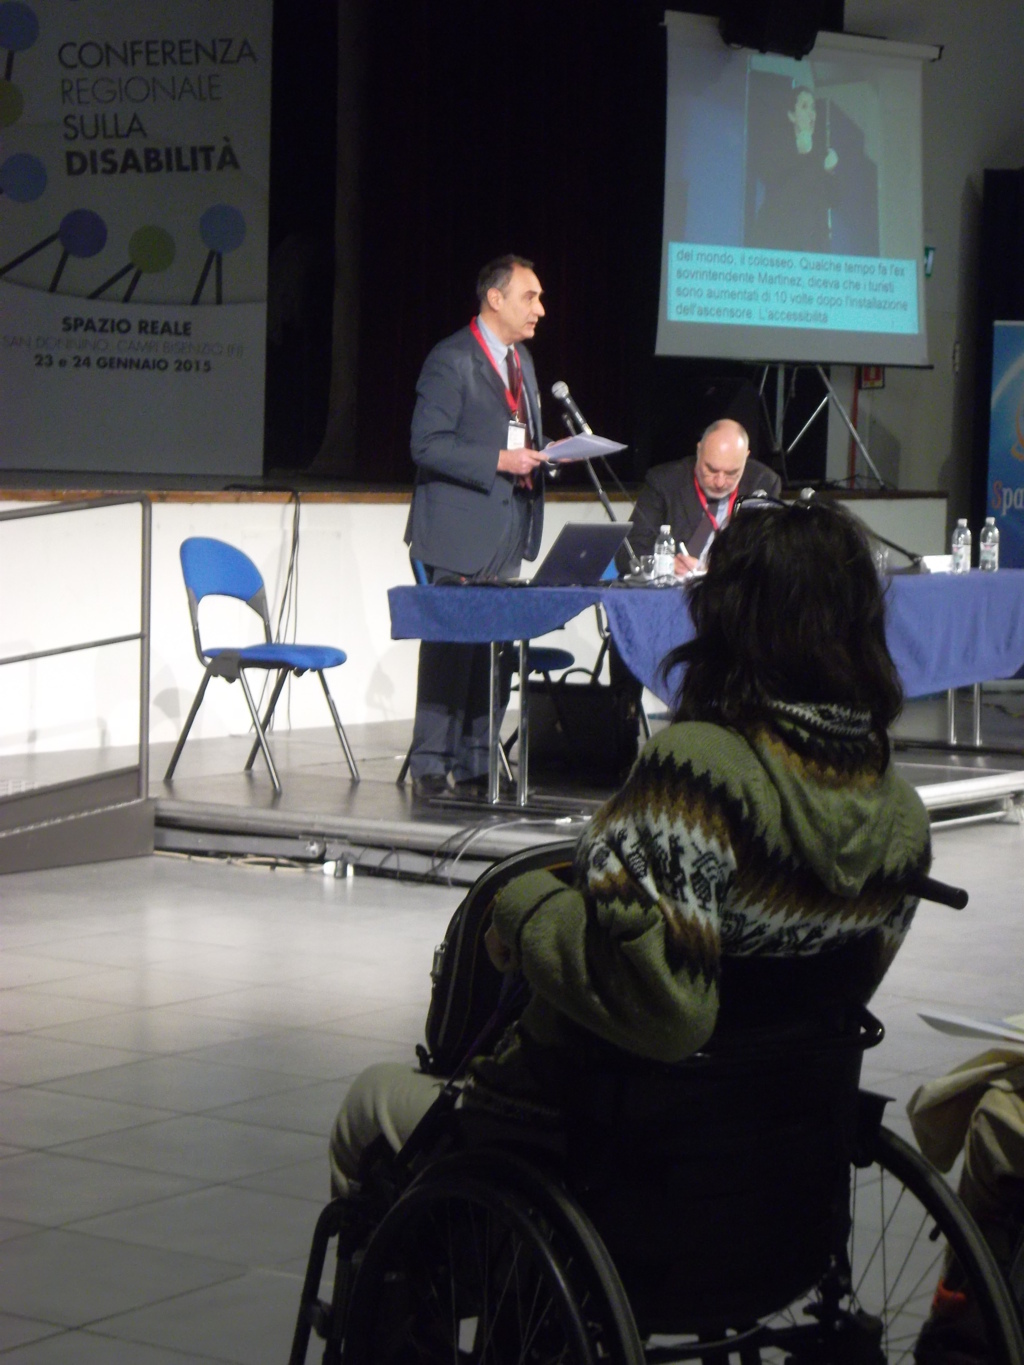 Tavolo relatori con Antonio Laurìa che parla e Emanuele Rossi, in primo piano vista da dietro donna su sedia a ruote